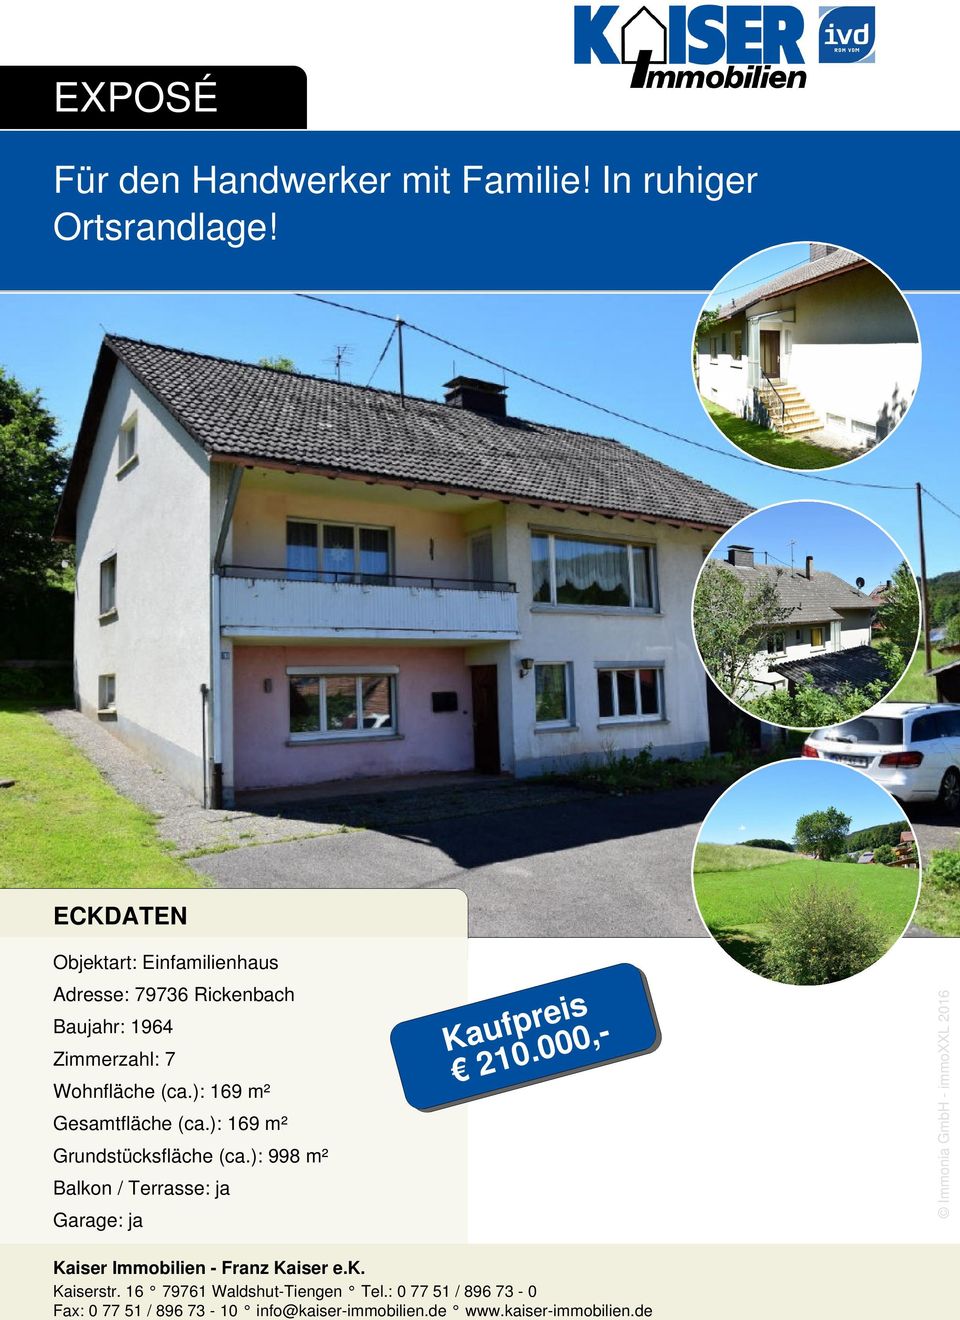 ECKDATEN Adresse: 79736 Rickenbach Baujahr: 1964 Zimmerzahl: 7 Wohnfläche (ca.